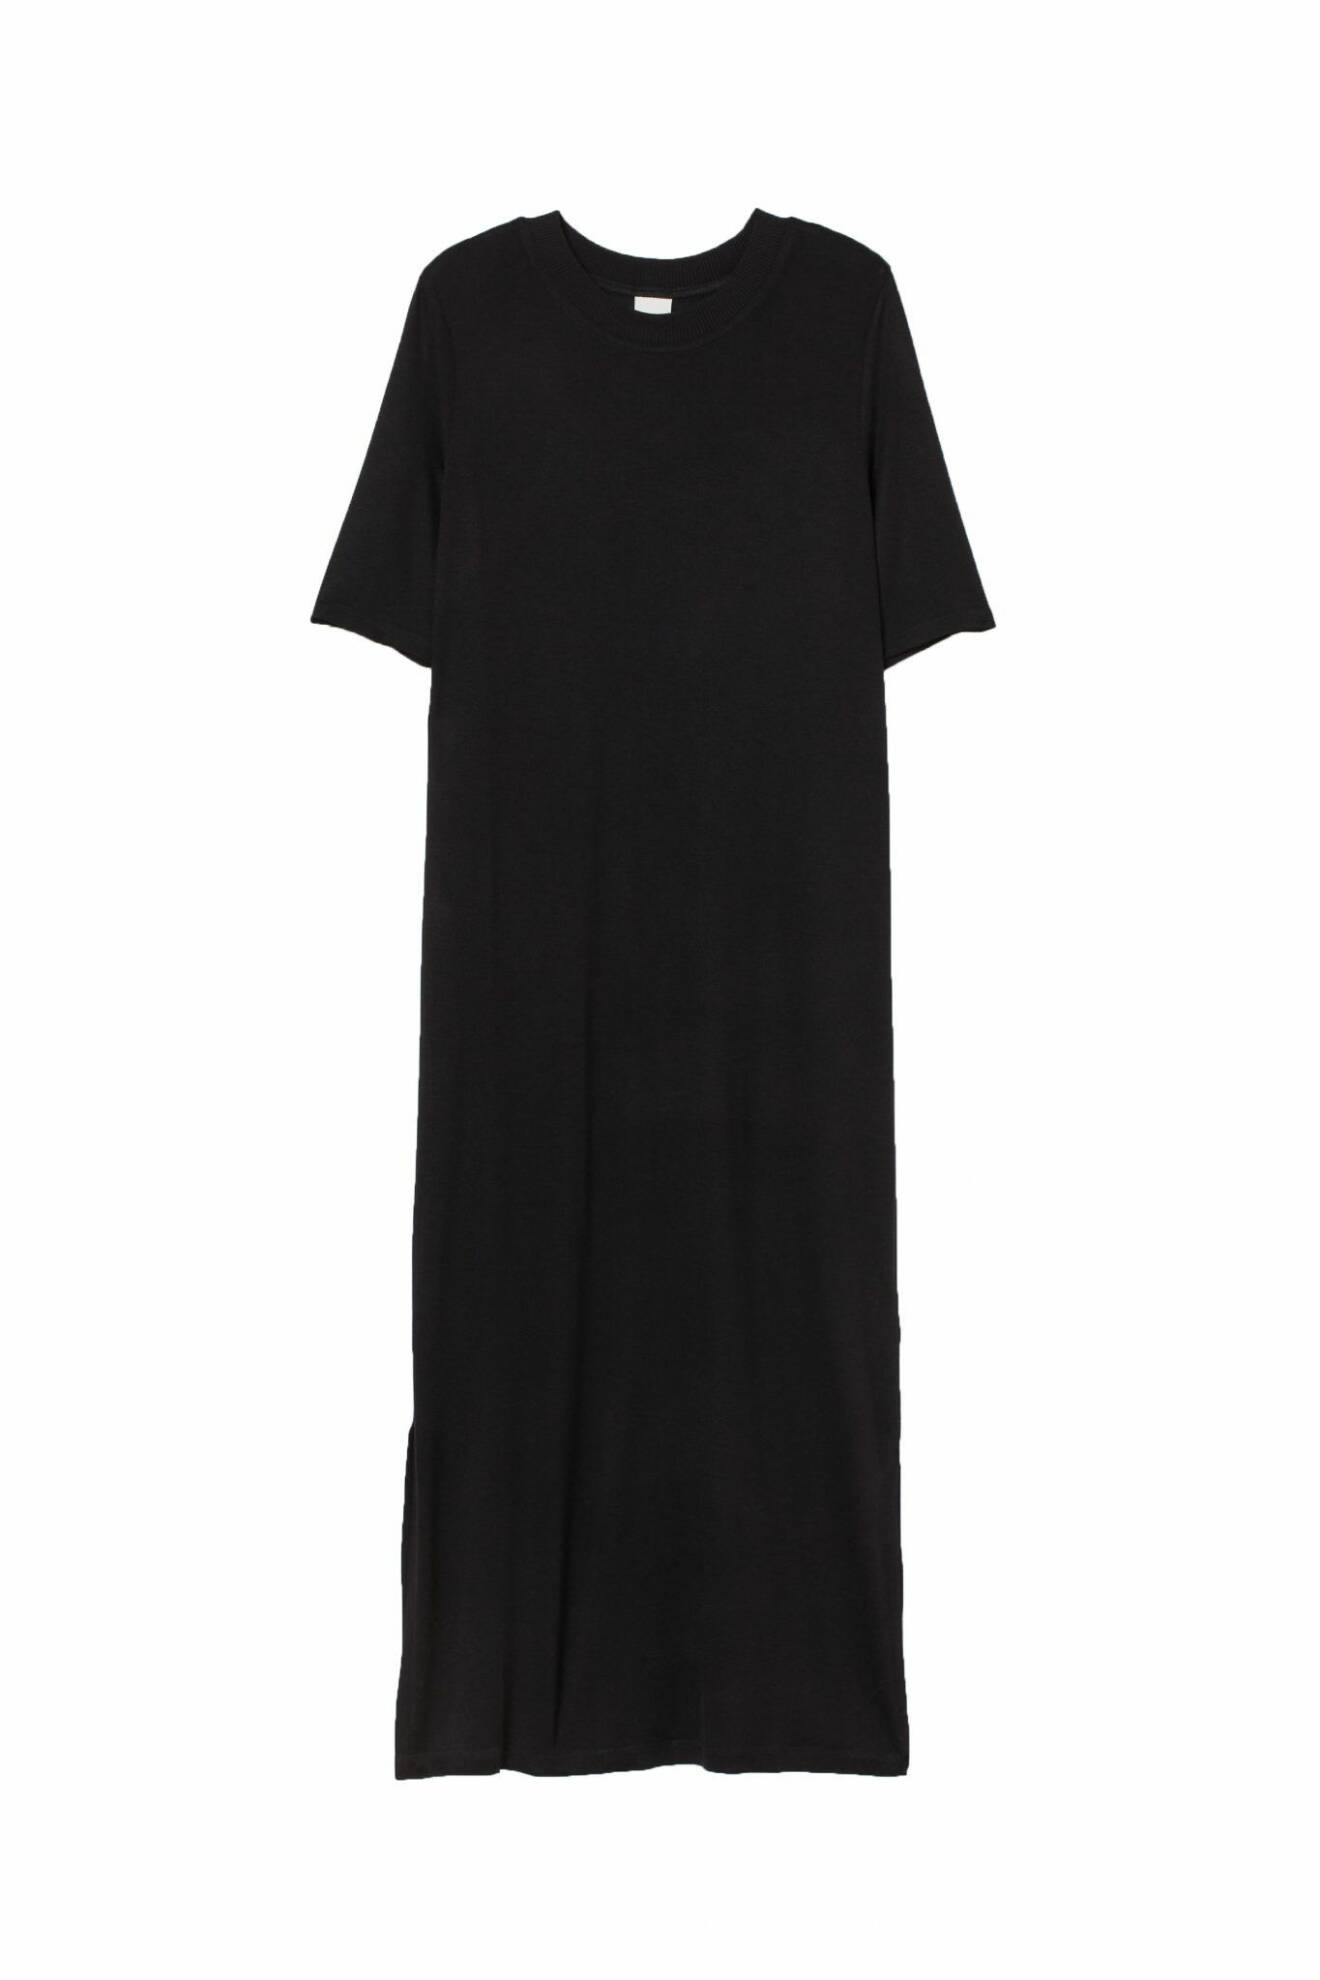 svart klänning från H&M.